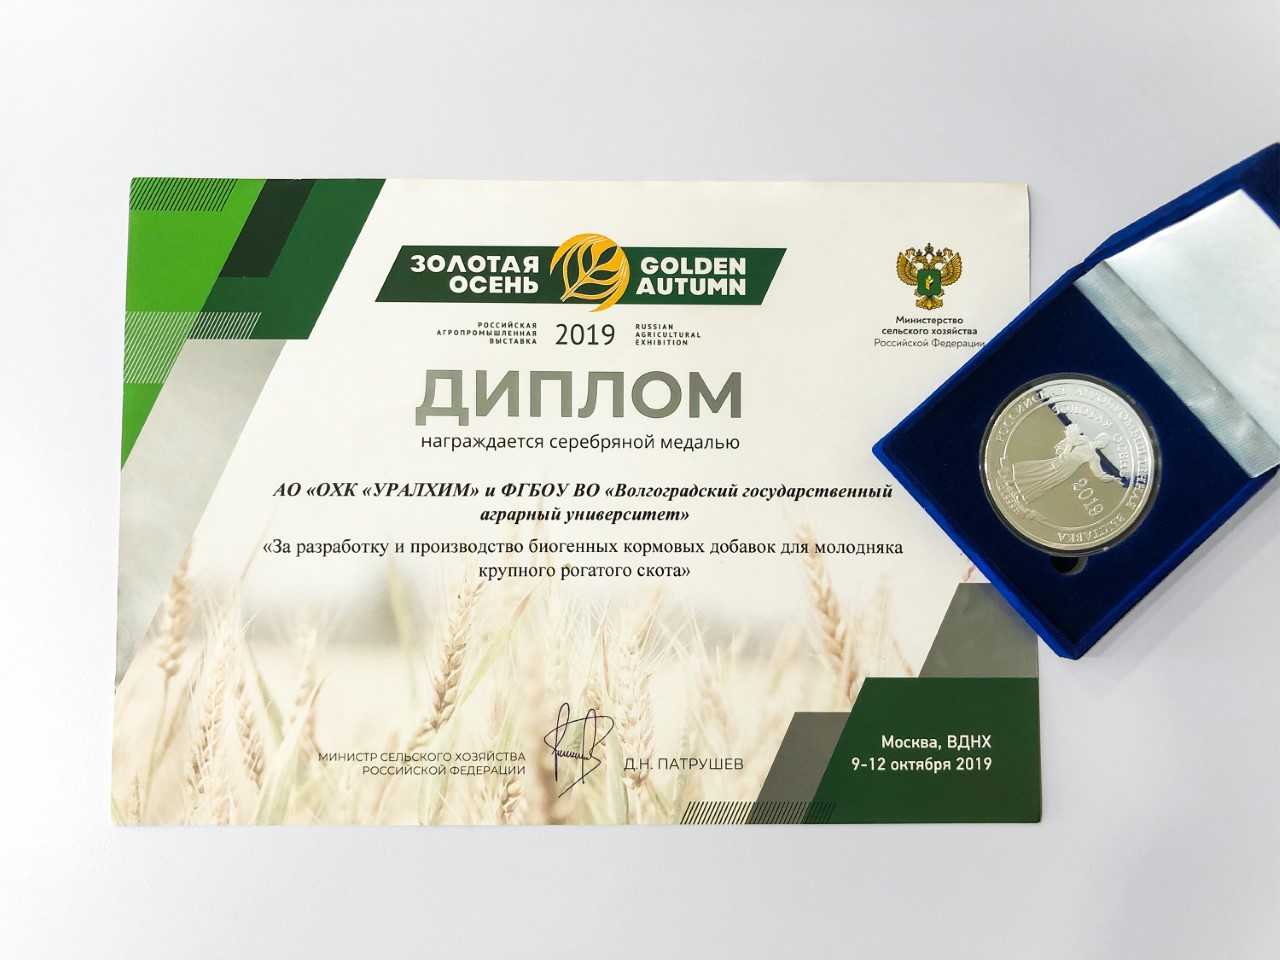 Инновационная продукция компании «УРАЛХИМ» удостоена серебряных медалей